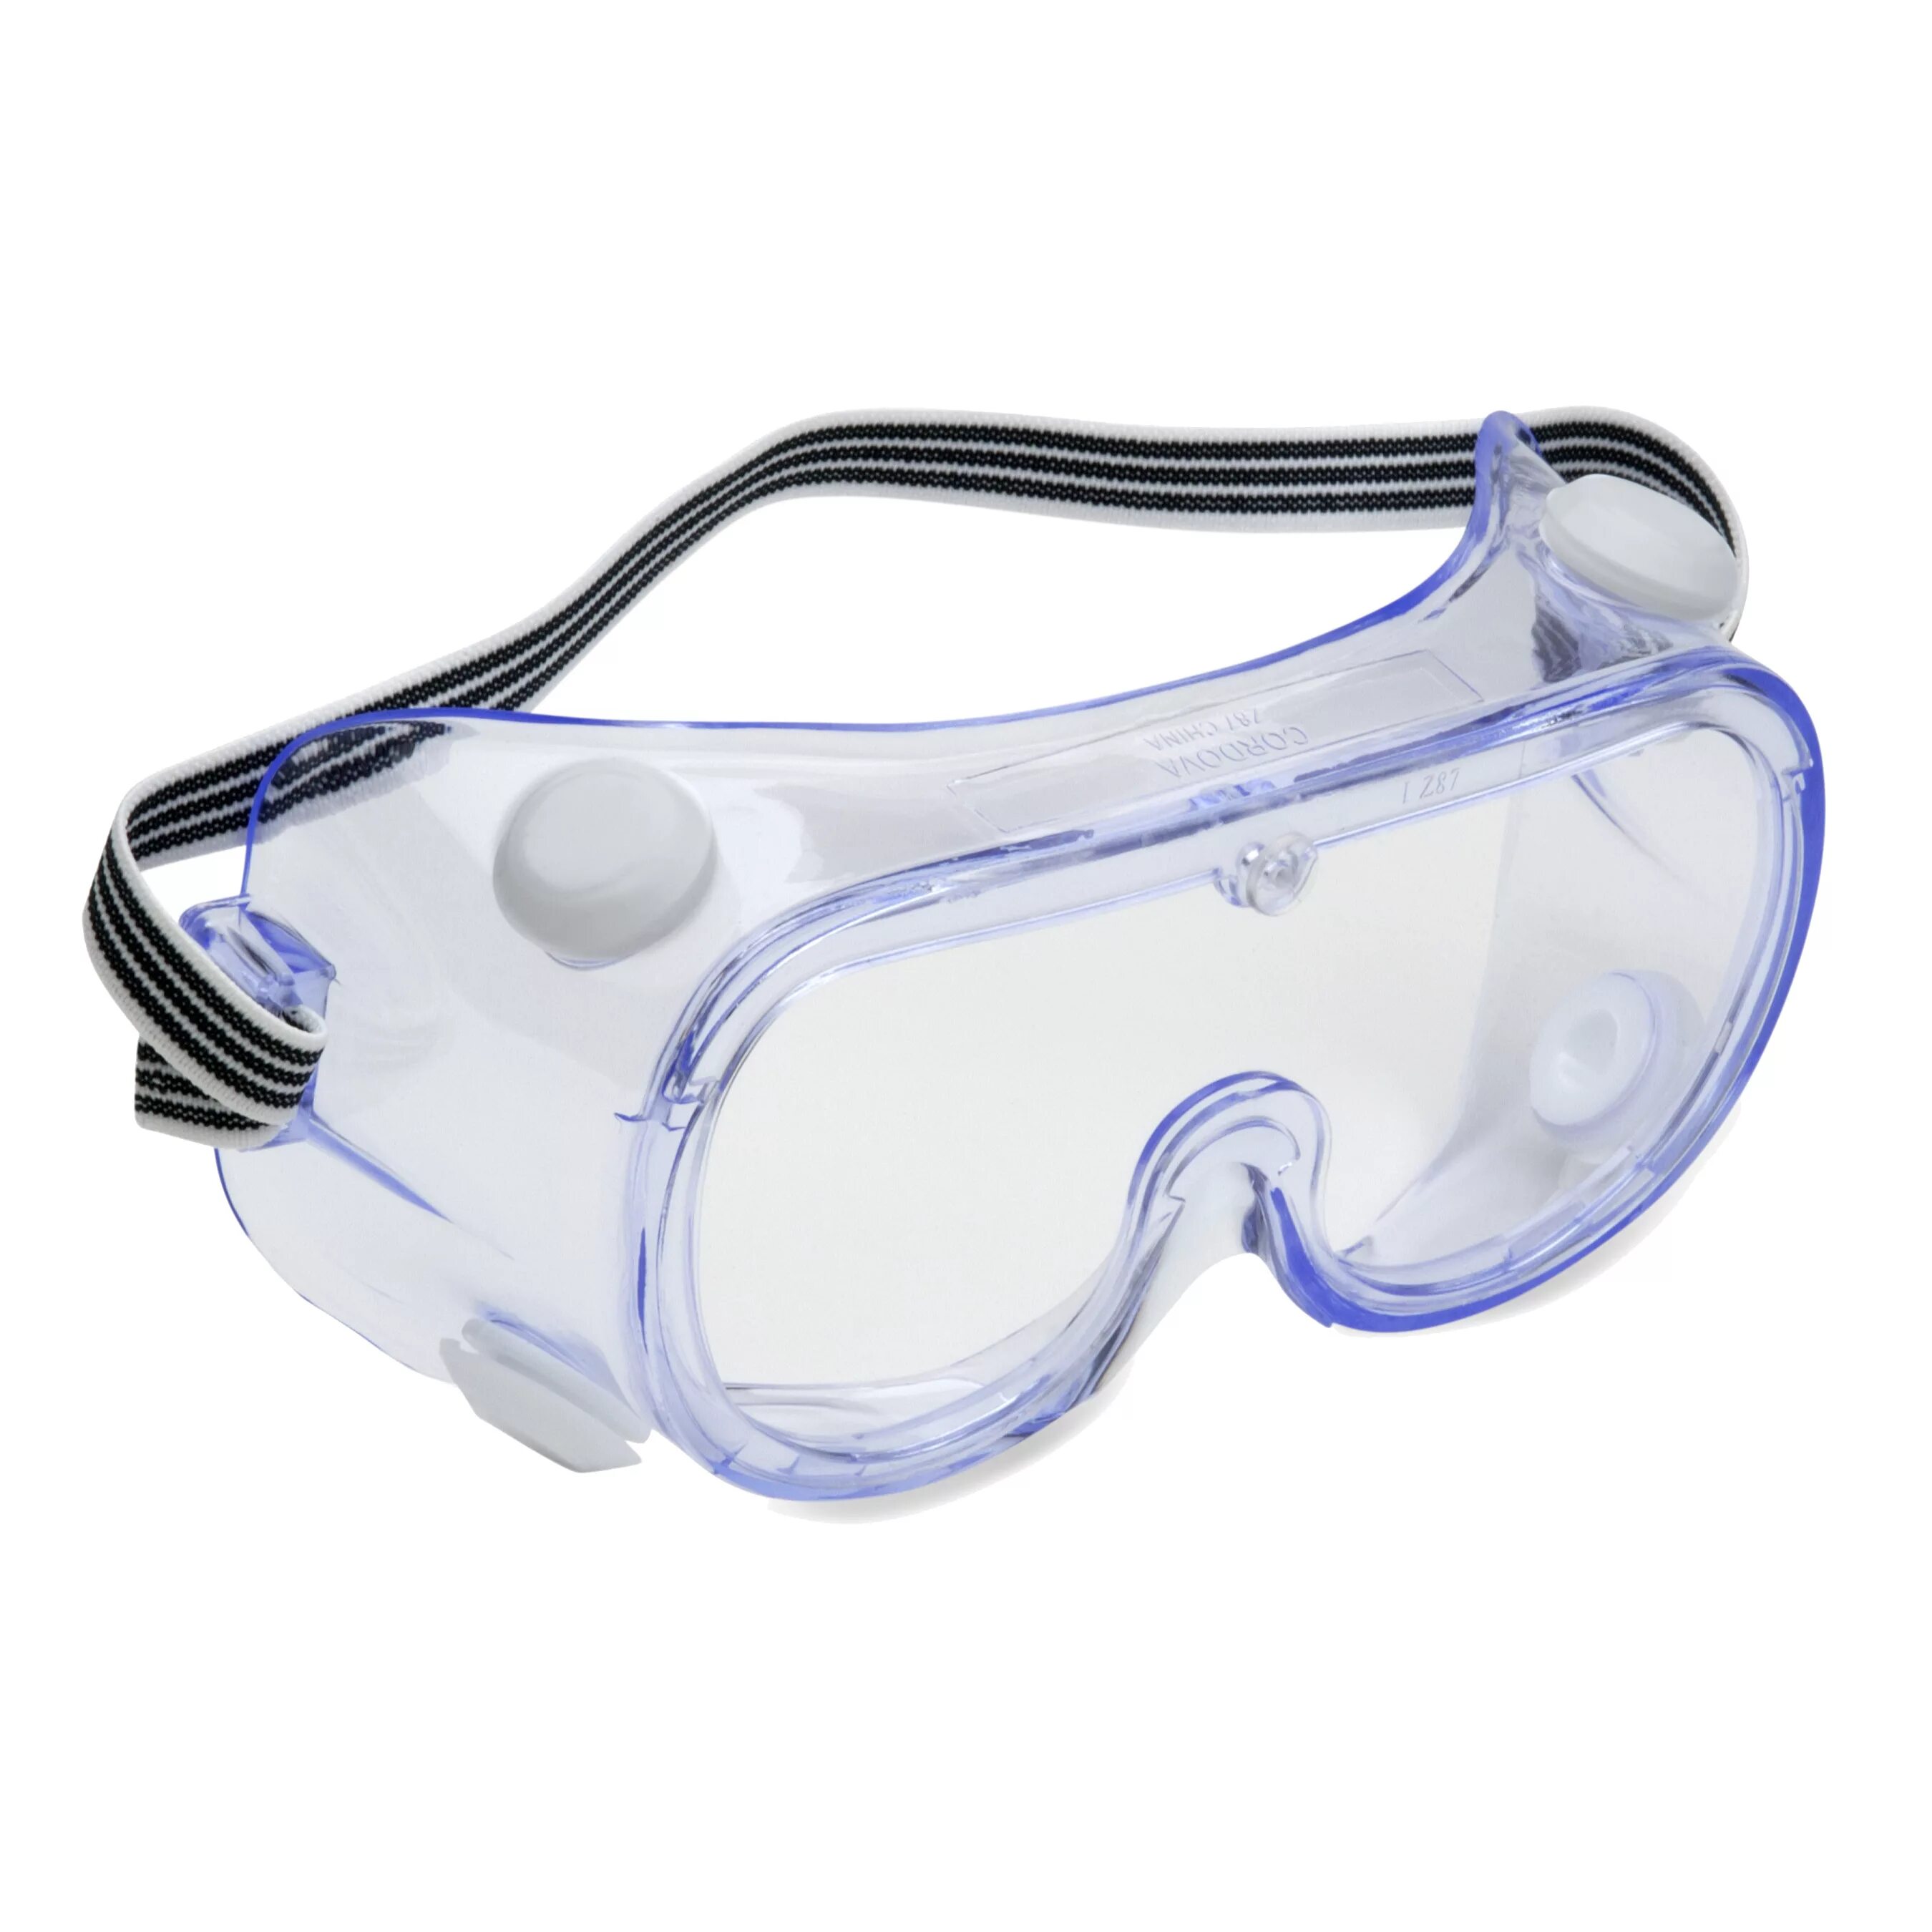 Очки защитные закрытые с прямой вентиляцией. Stayer очки защитные с прямой вентиляцией 1102. Очки защитные ЕЛАНПЛАСТ. Очки защитные СИБРТЕХ очк401 о-13031. Очки защитные Stayer 11025.